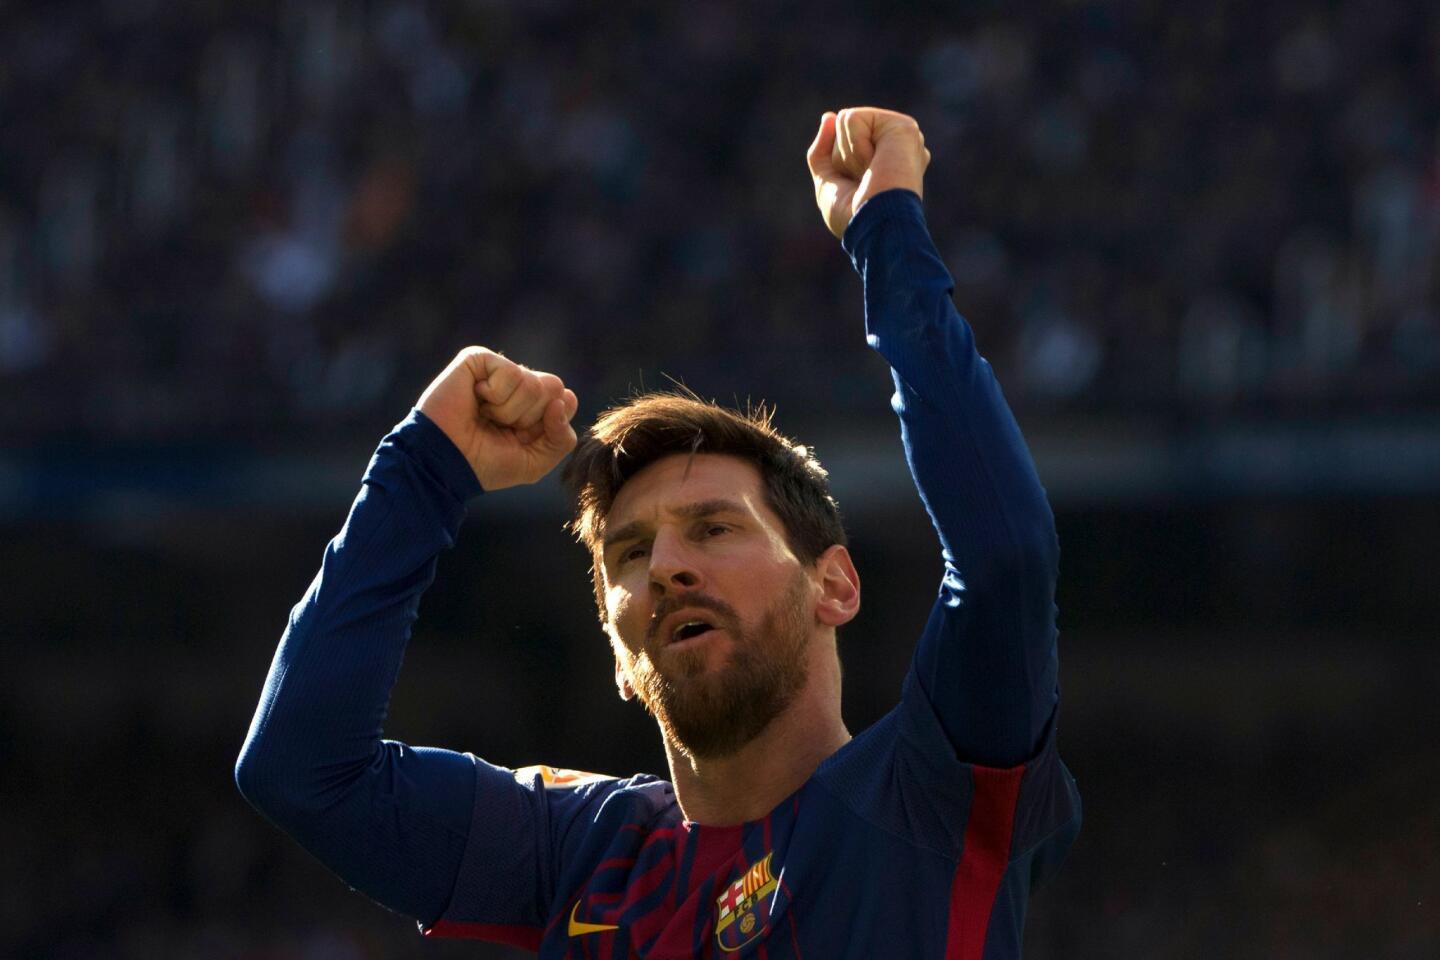 El futbolista argentino de 30 años, anotó 52 goles en la Liga. El 5 de julio de 2017, el FC Barcelona anunció de forma oficial la renovación de Messi hasta la temporada 2021. A su fortuna se sumó su contrato con la marca Adidas, responsable de $27 millones de su ingreso.